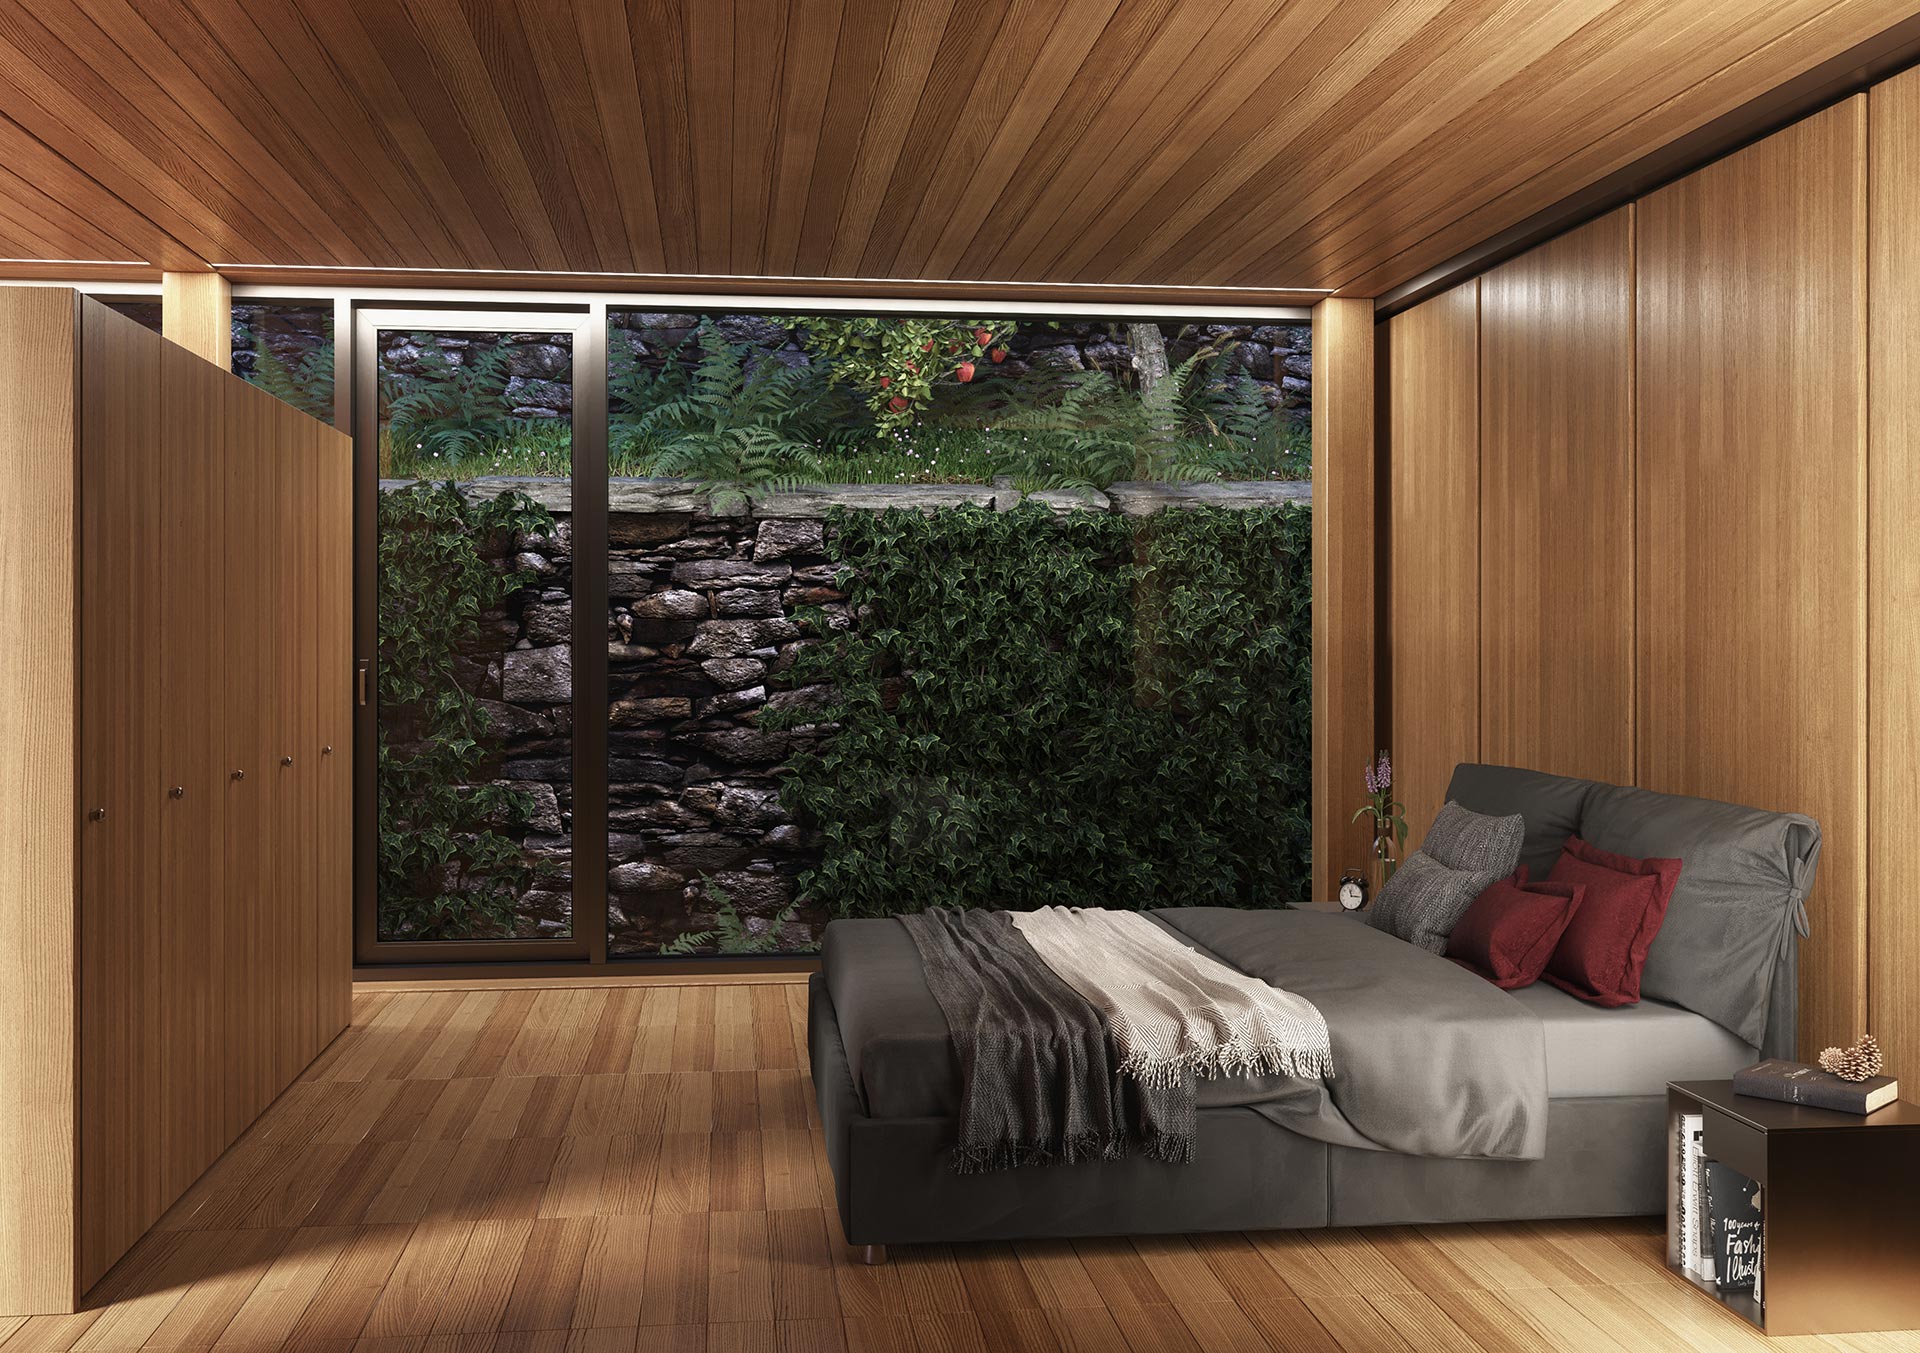 progetto di architettura - casetta moderna in legno